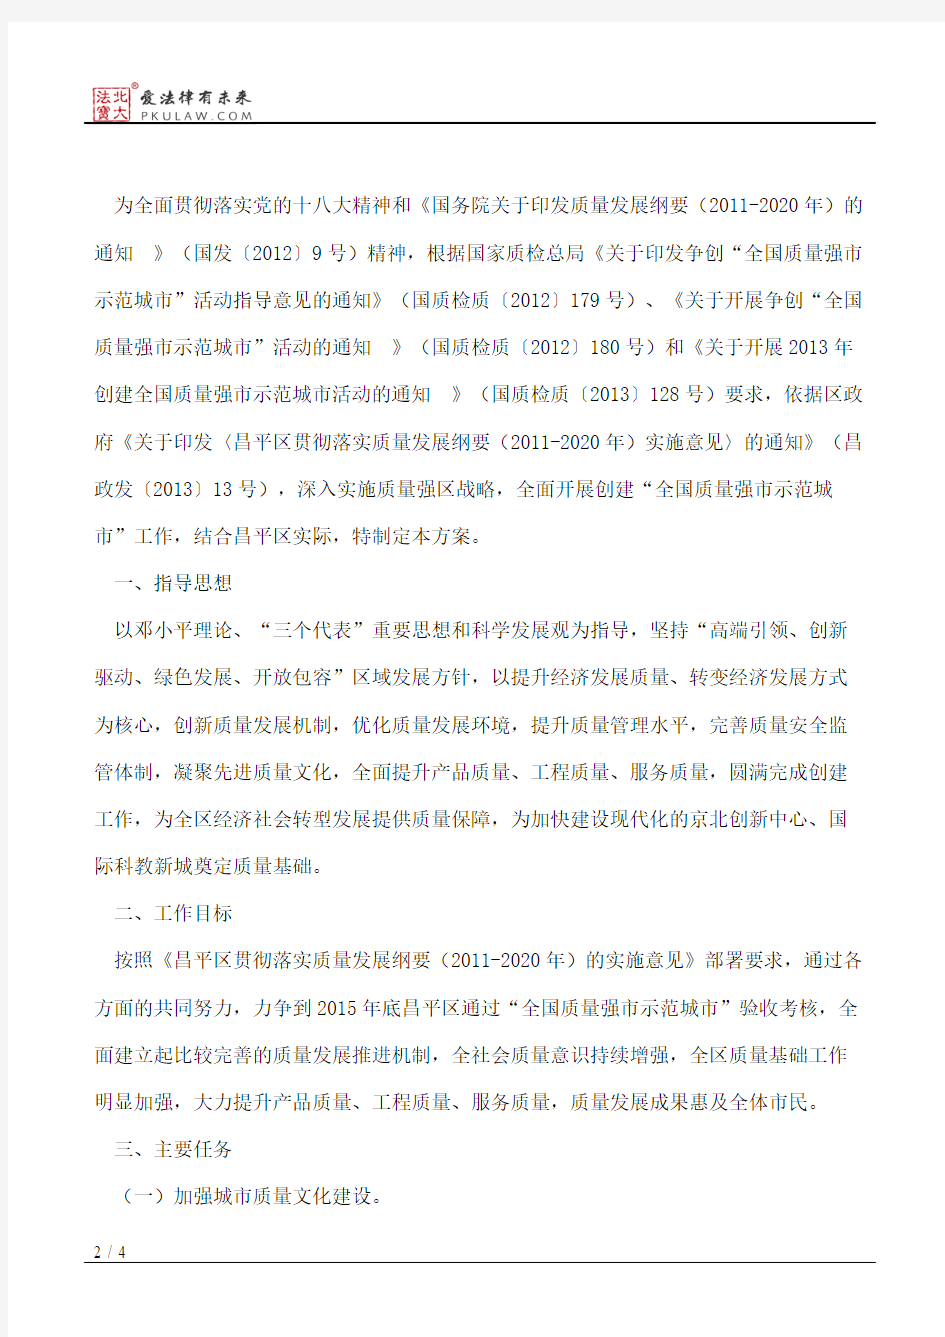 北京市昌平区人民政府关于印发昌平区创建全国质量强市示范城市工